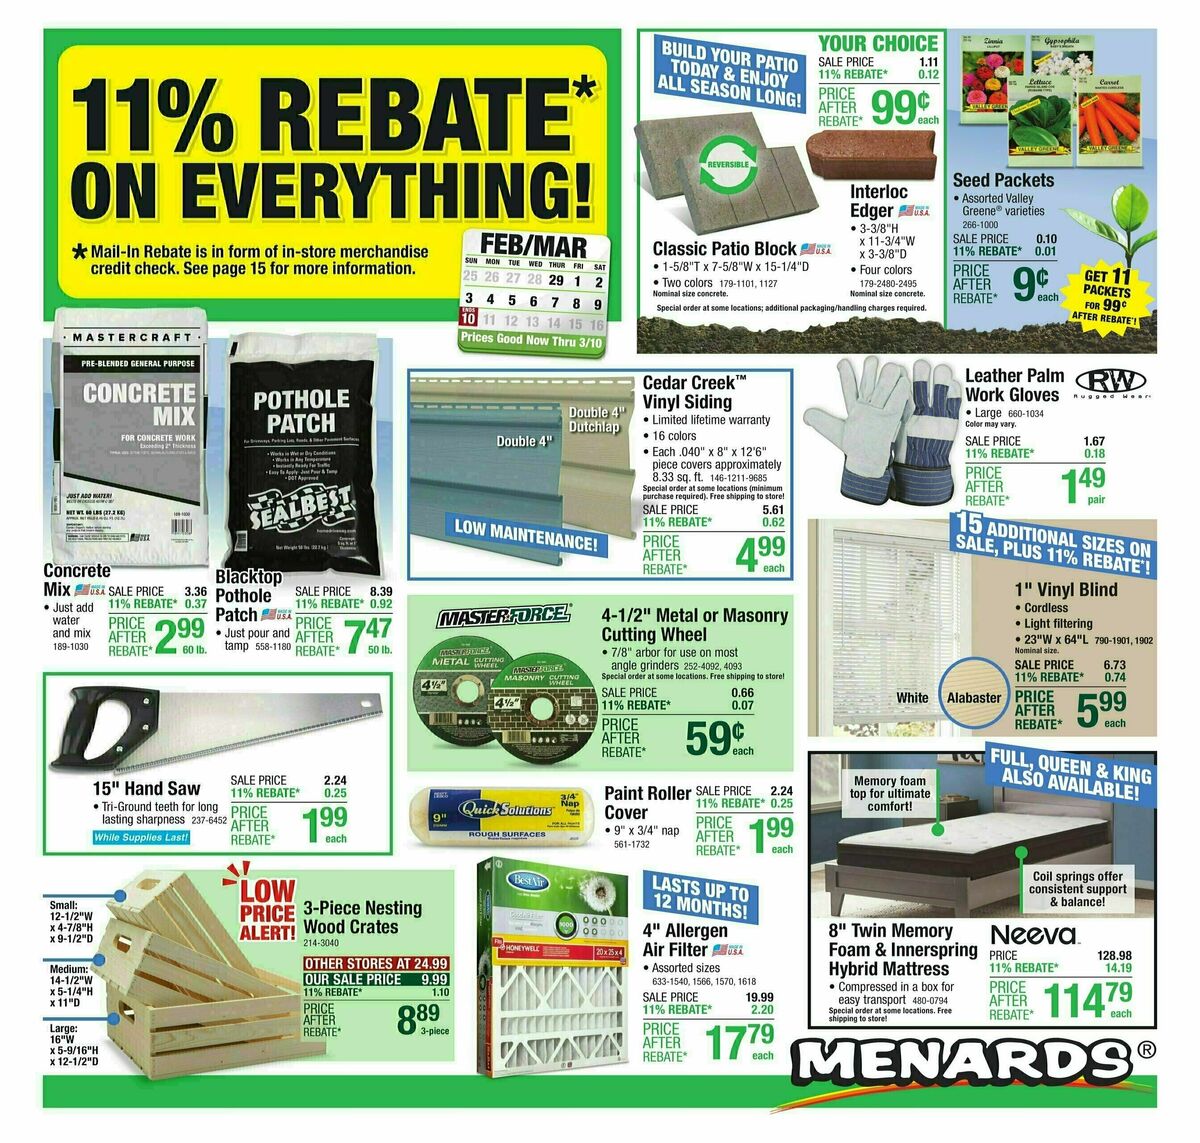 Menards 11% Rebate Sale Weekly Ad from February 28